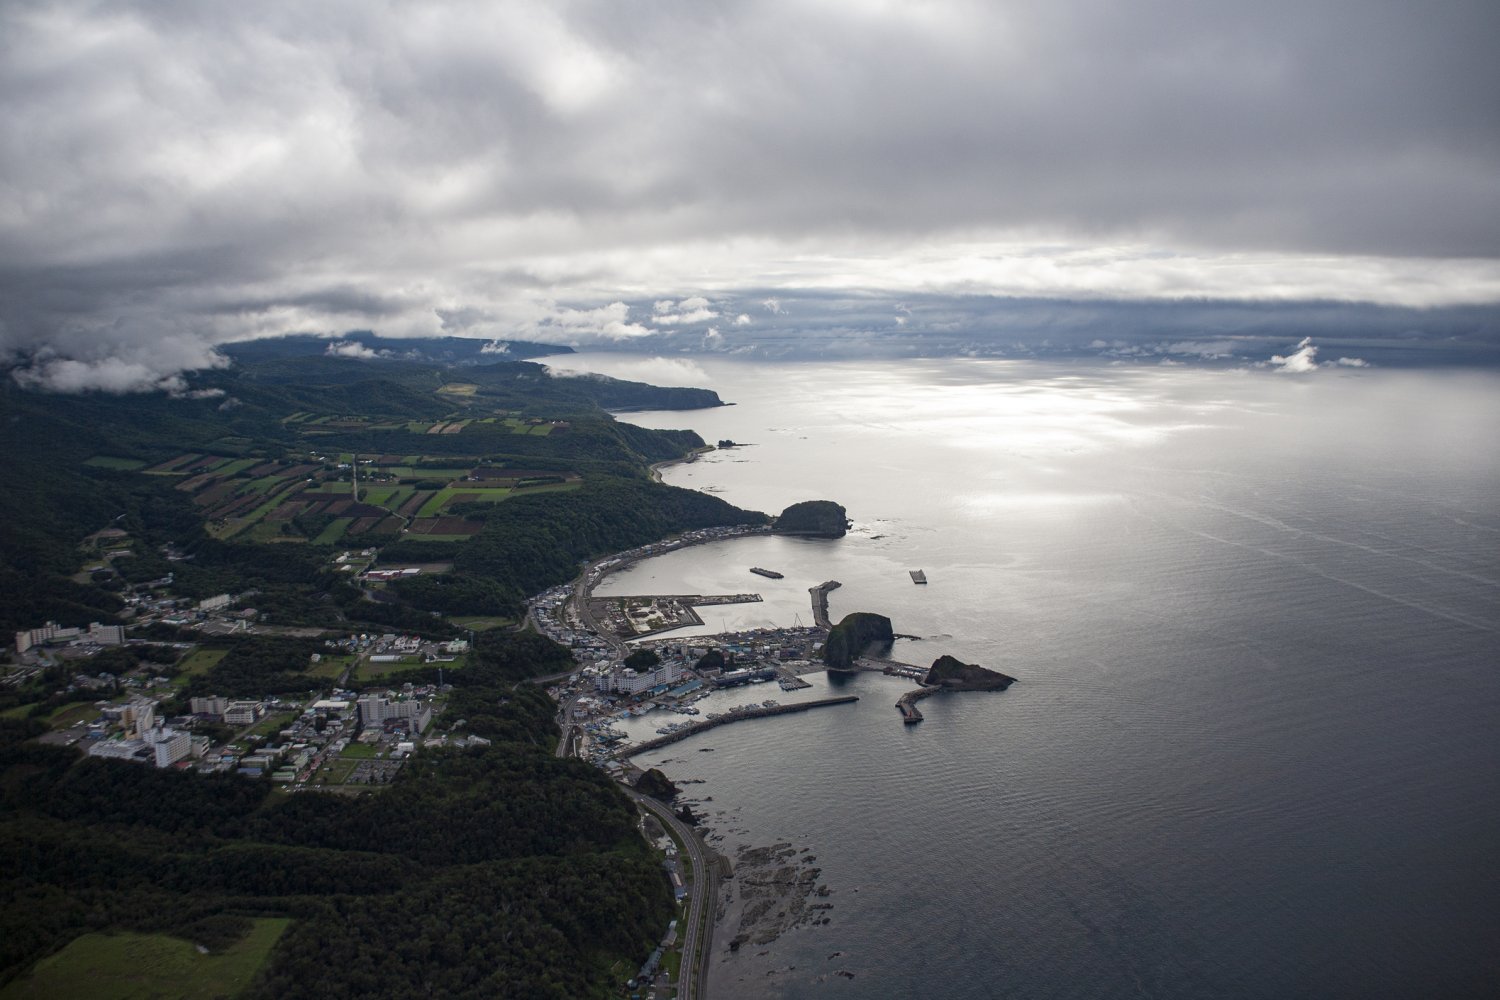 上空から見たウトロの町と漁港。オロンコ岩とカメ岩が特徴的。